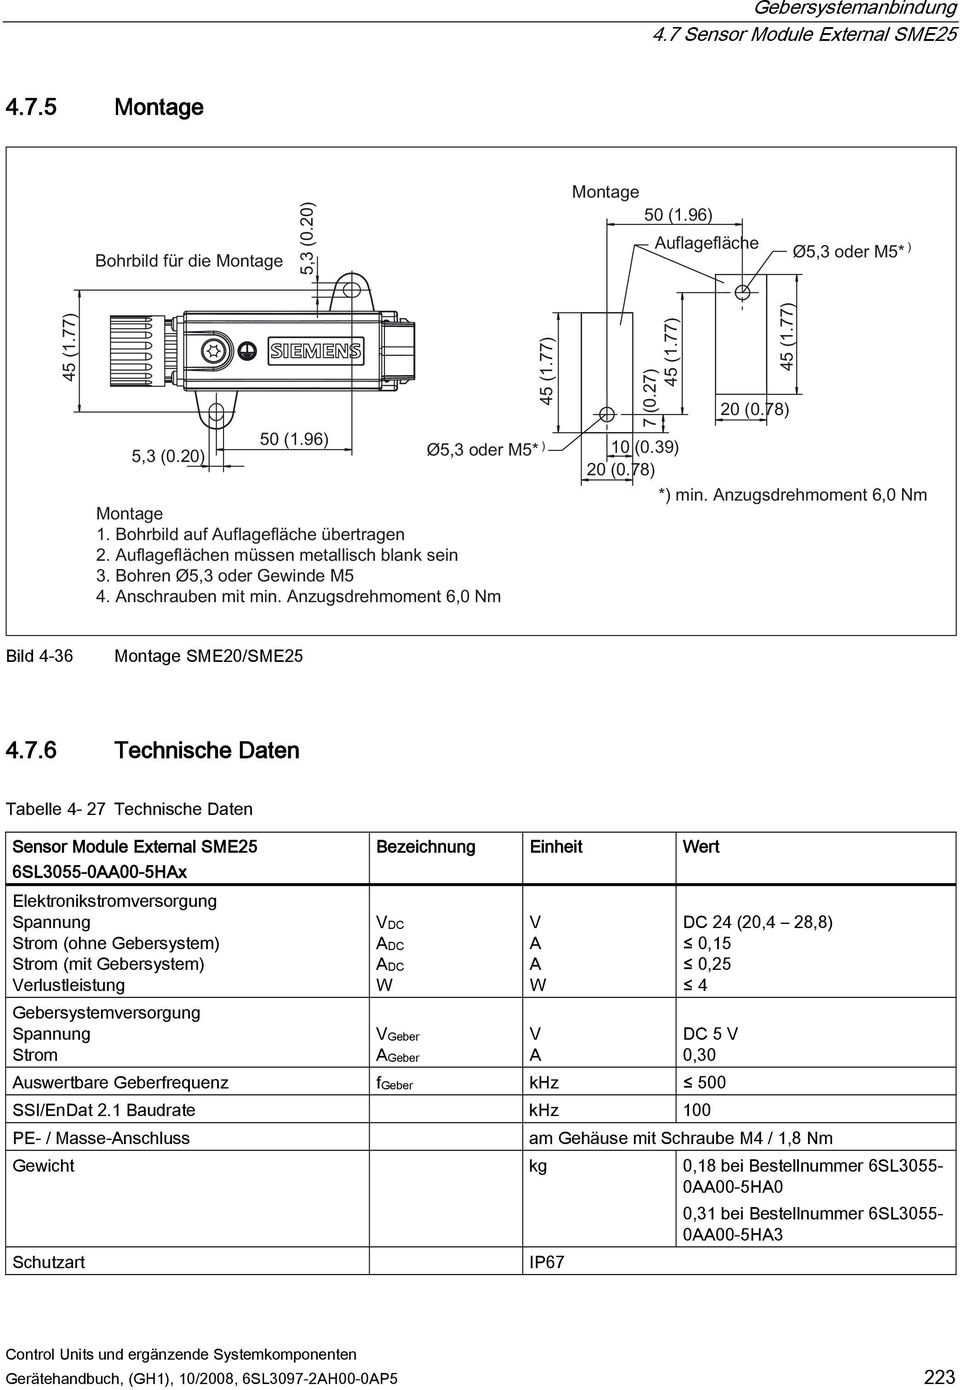 Gebersystemversorgung Spannung Strom VGeber AGeber V A DC 5 V 0,30 Auswertbare Geberfrequenz fgeber khz 500 SSI/EnDat 2.